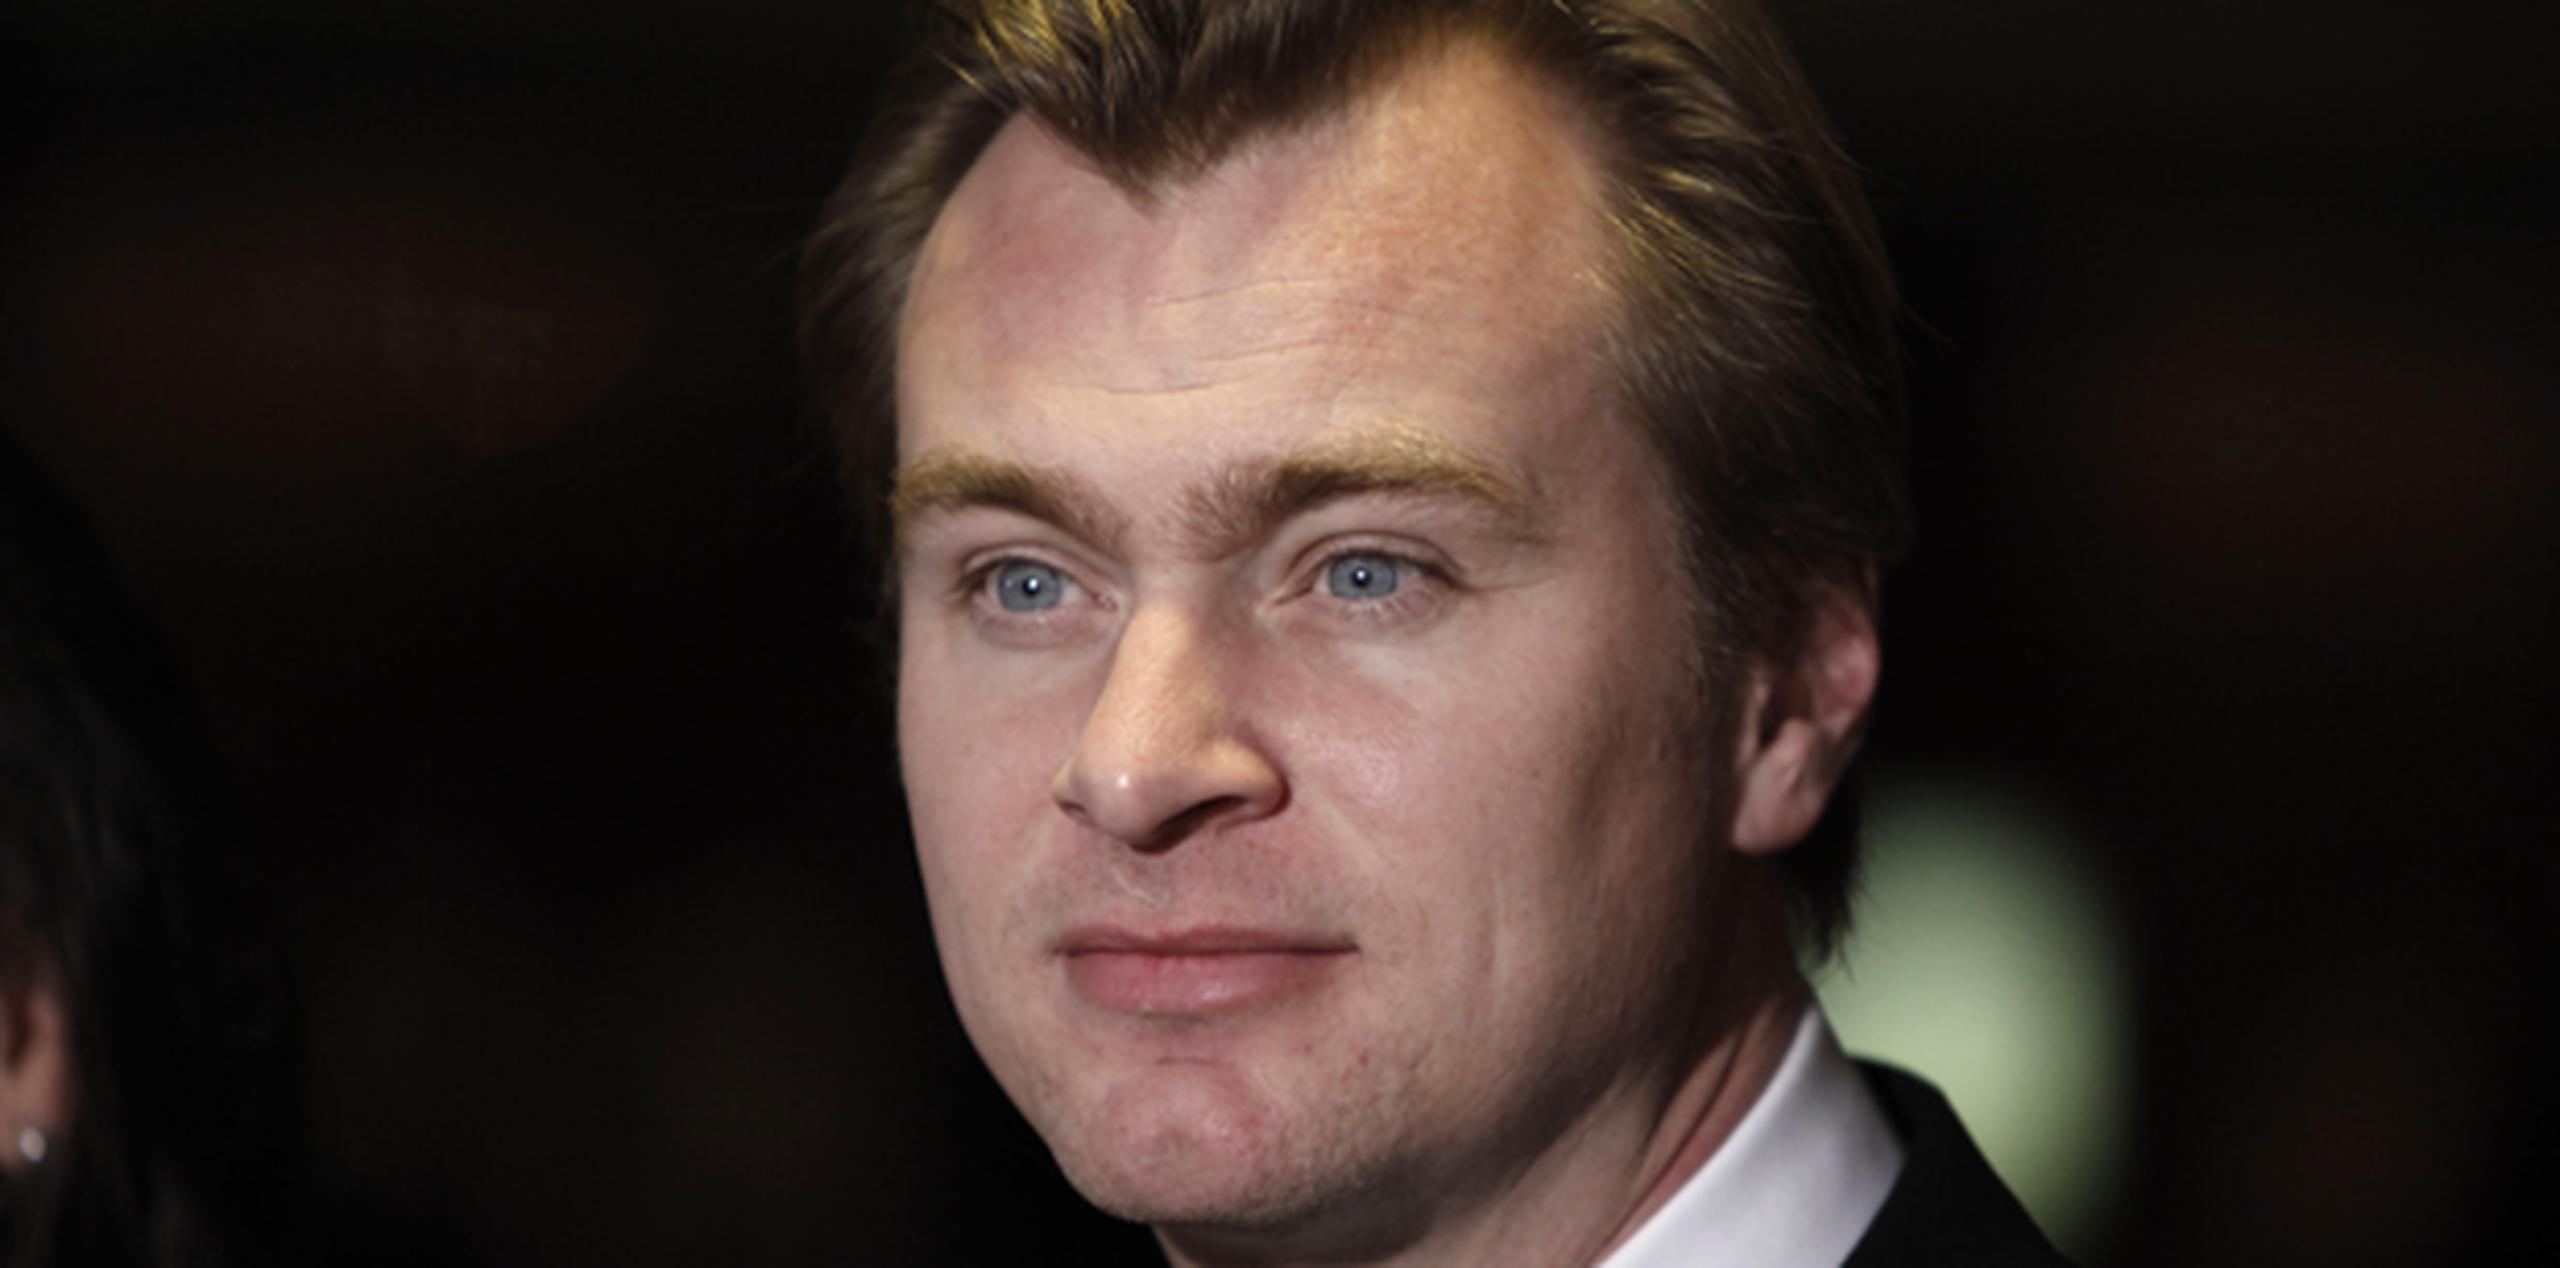 El director Christopher Nolan dirigirá y escribirá Interstellar basándose en un guión de su hermano, Jonathan Nolan. (Archivo)